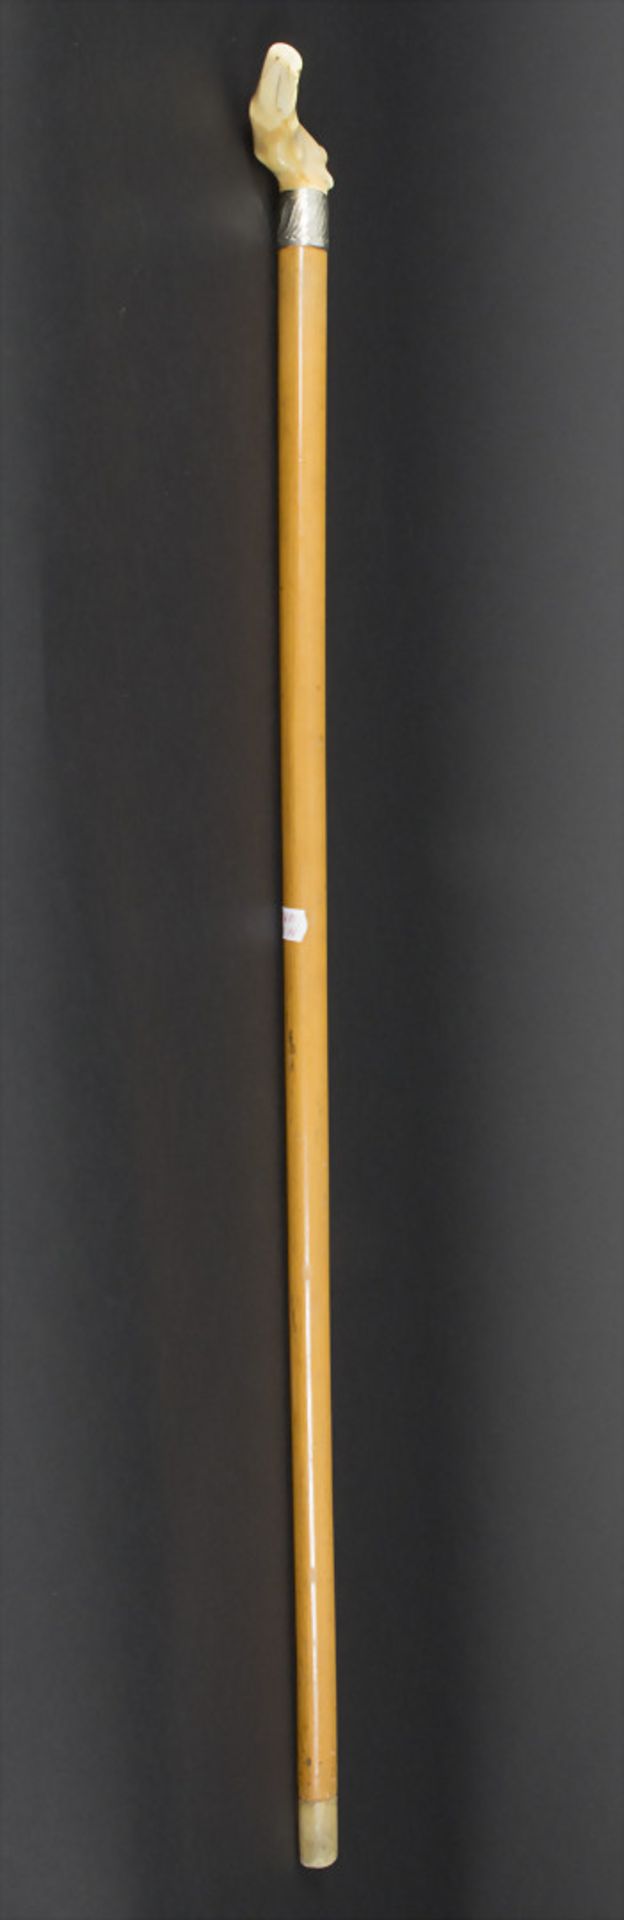 Gehstock mit Elfenbeingriff / A cane with ivory handle, um 1900Material: Malaccarohr (Schuss), - Bild 5 aus 5